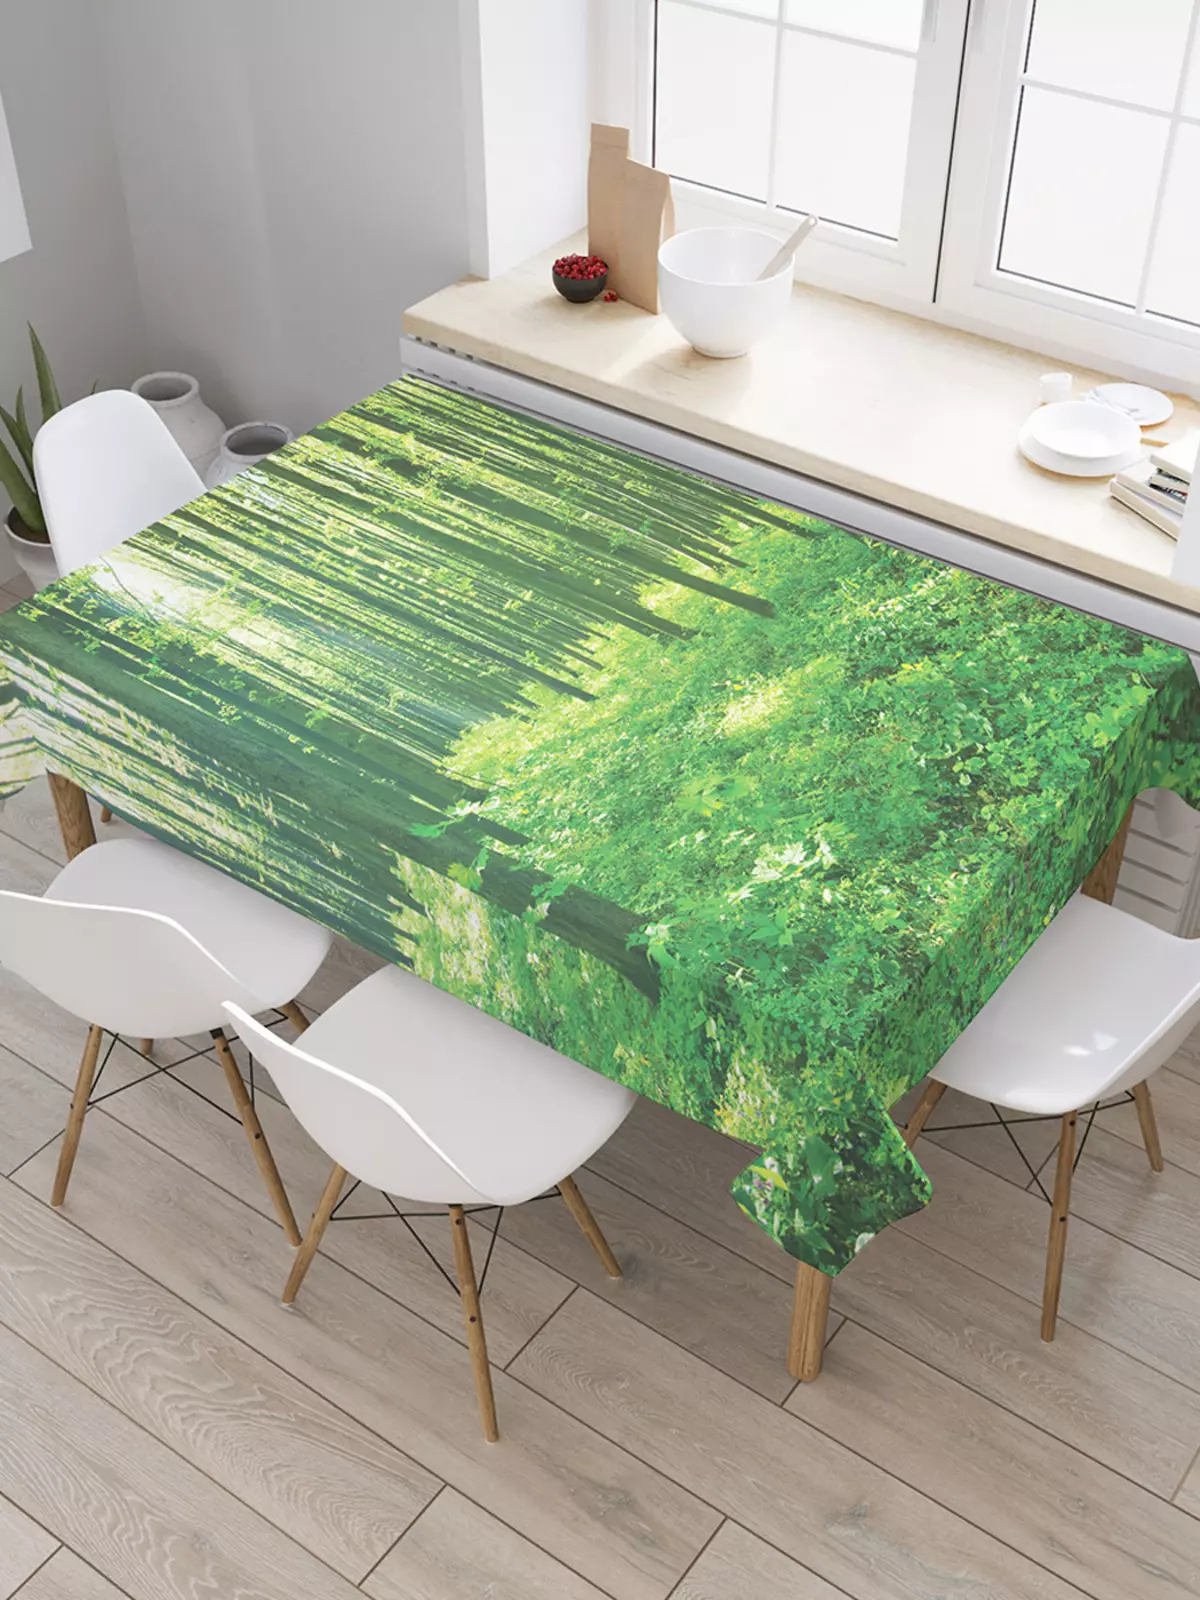 Manteles verdes: manteles monófonicos verdes oscuros en la mesa y green-green, opciones de configuración. Ropa de cama y jacquard, manteles ovalados y redondos en el interior. 21601_8